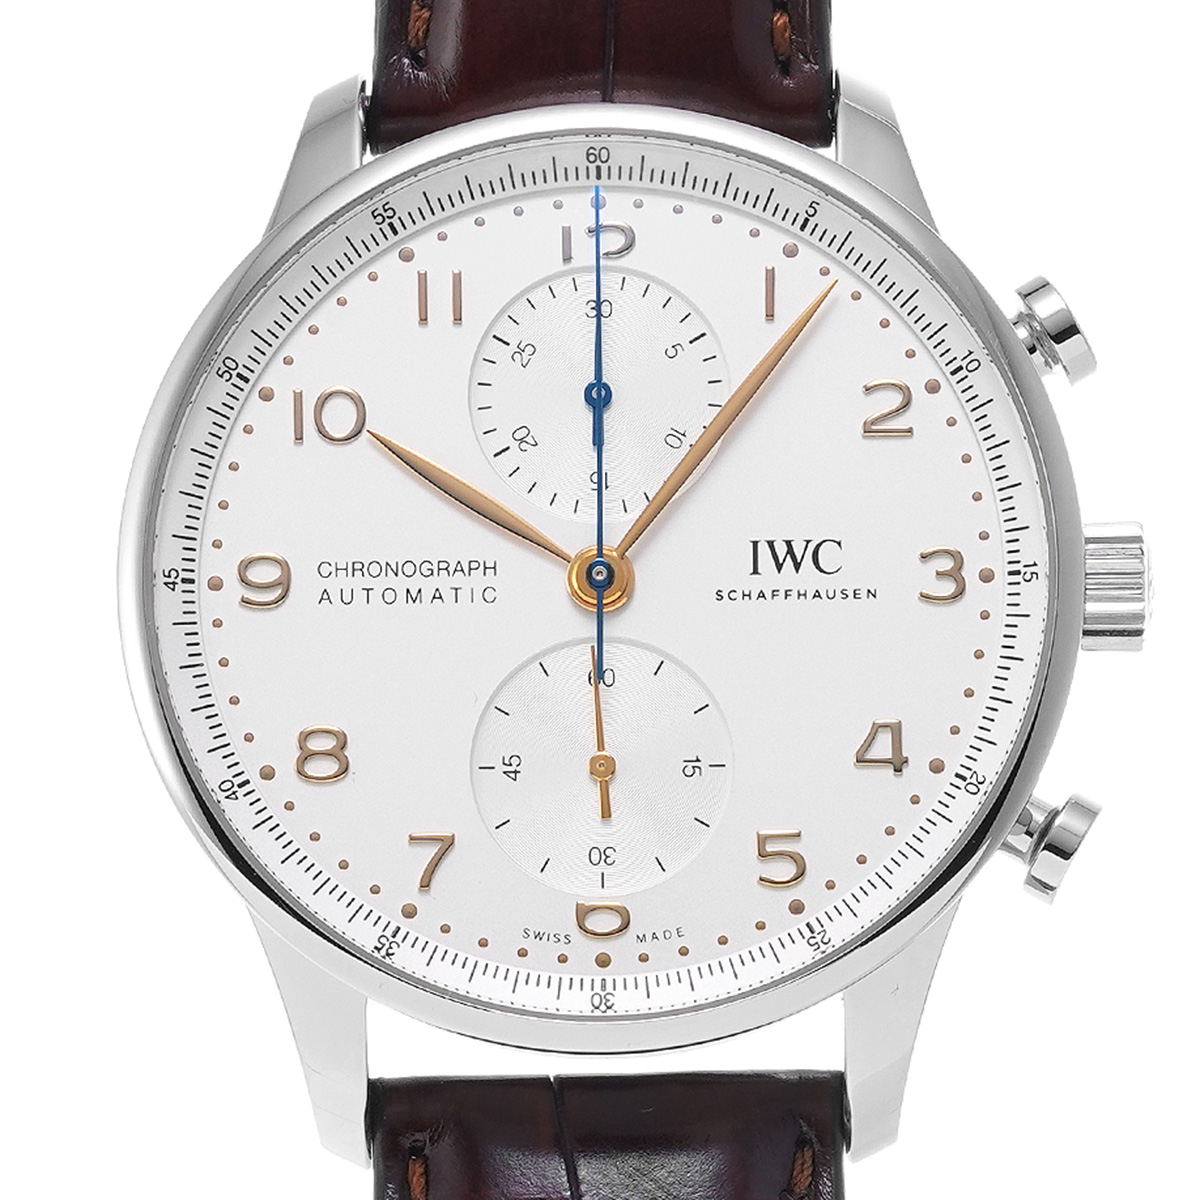 IWC メンズ腕時計 ポルトギーゼ クロノグラフ IW371604 シルバー文字盤 自動巻き